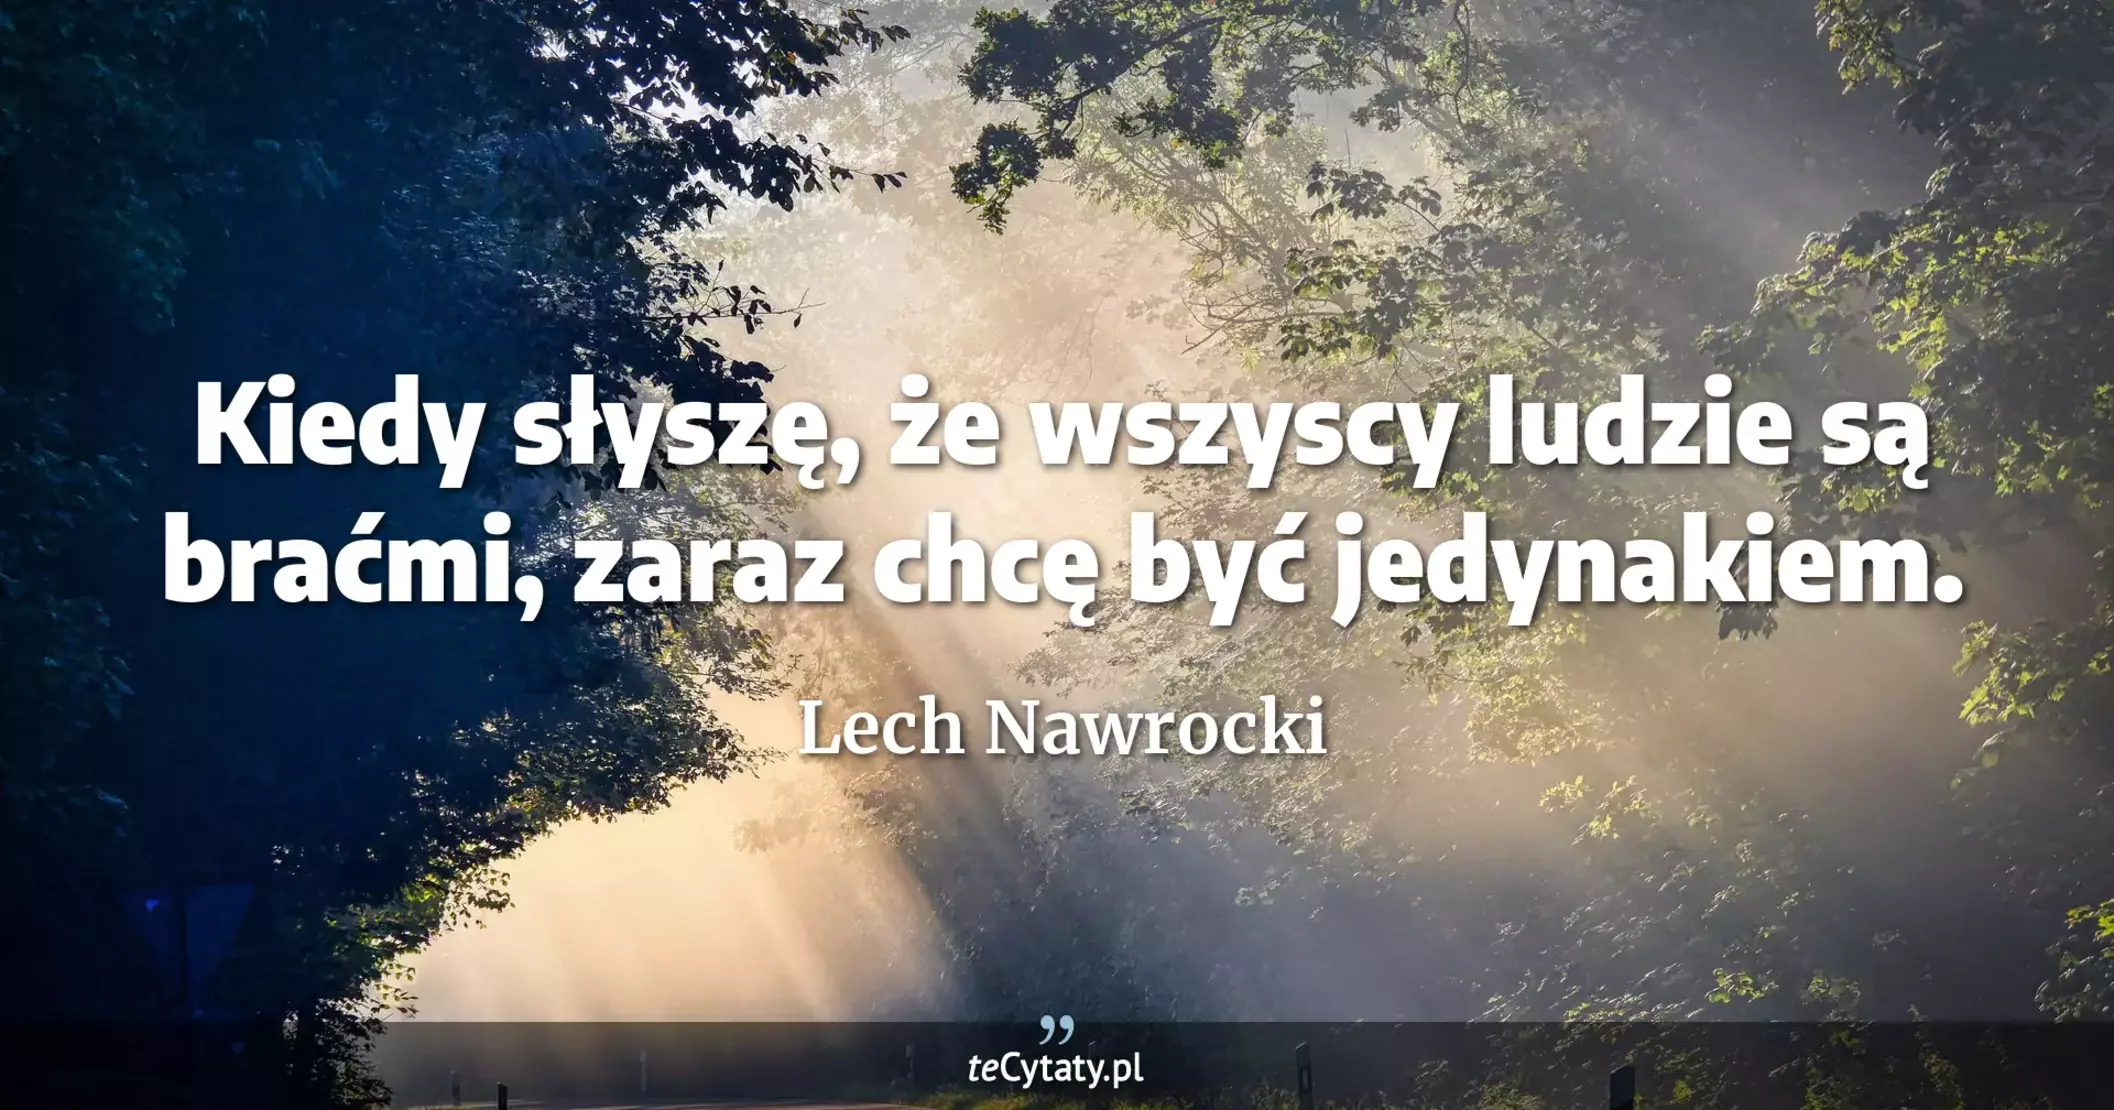 Kiedy słyszę, że wszyscy ludzie są braćmi, zaraz chcę być jedynakiem. - Lech Nawrocki